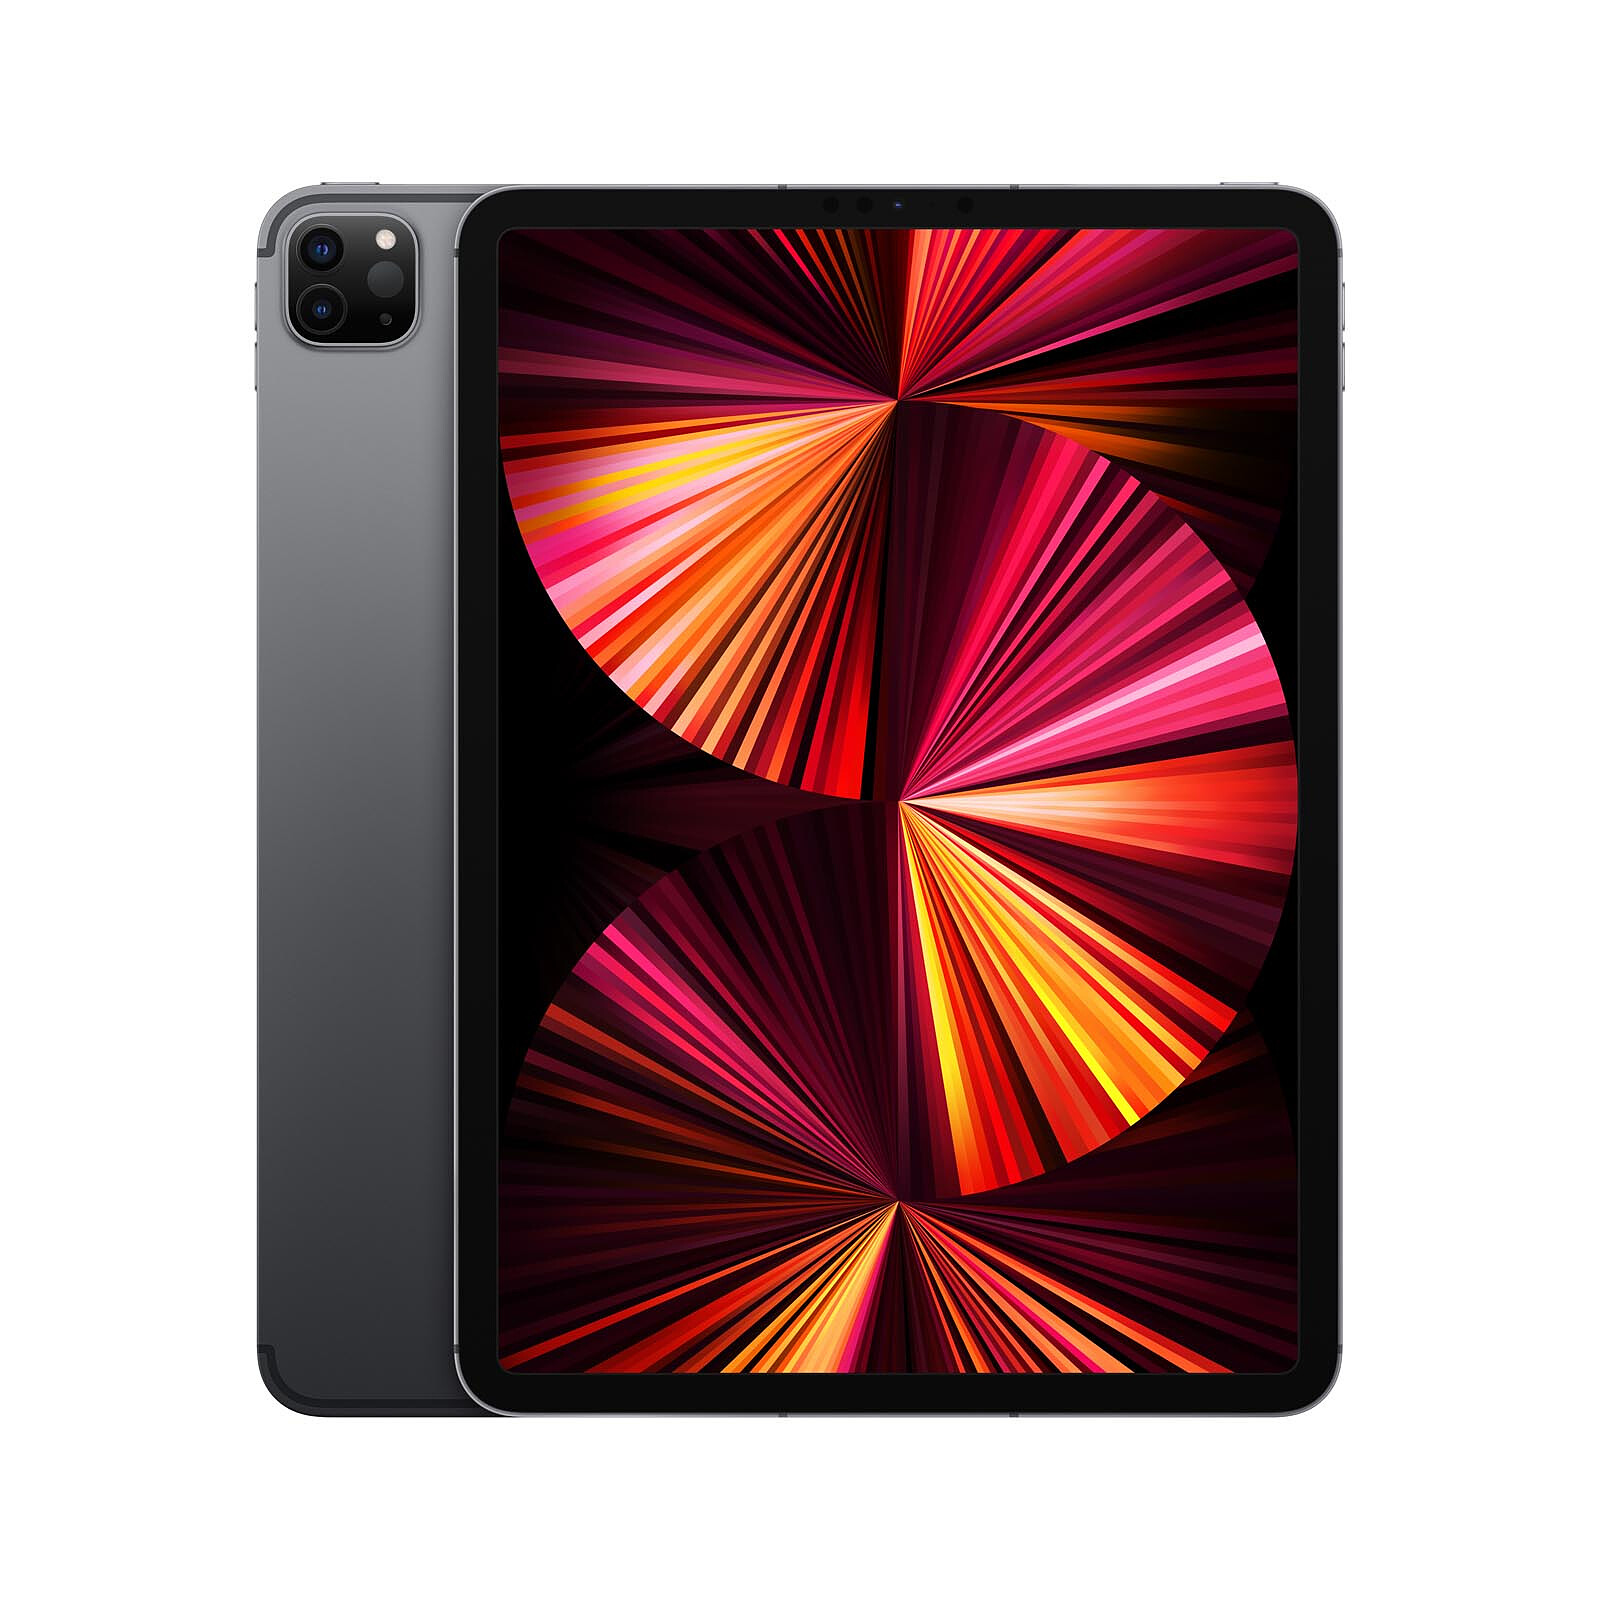 Apple iPad Pro (2021) 11-inch 256GB Wi-Fi Cellular Sidelite Grey